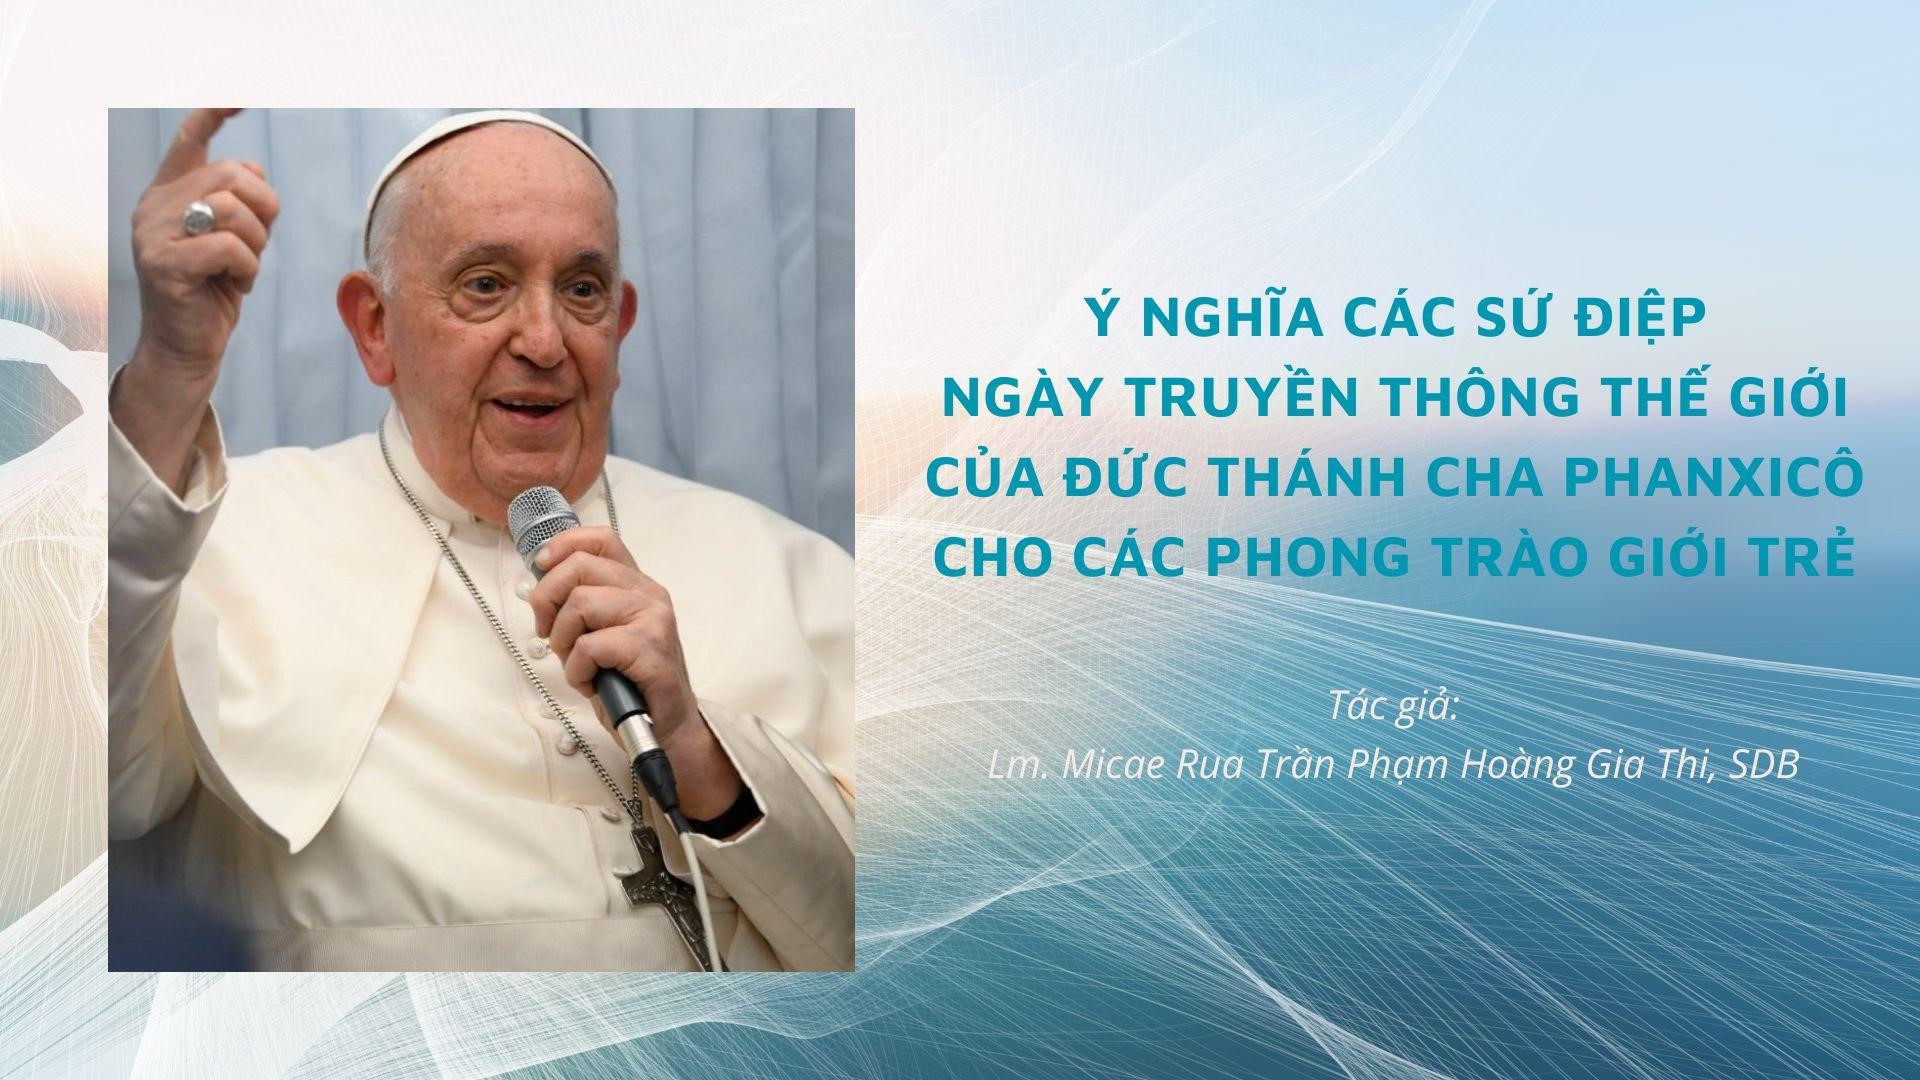 Ý nghĩa các Sứ điệp Ngày Thế giới Truyền thông của Đức Thánh Cha Phanxicô cho các Phong trào Giới trẻ